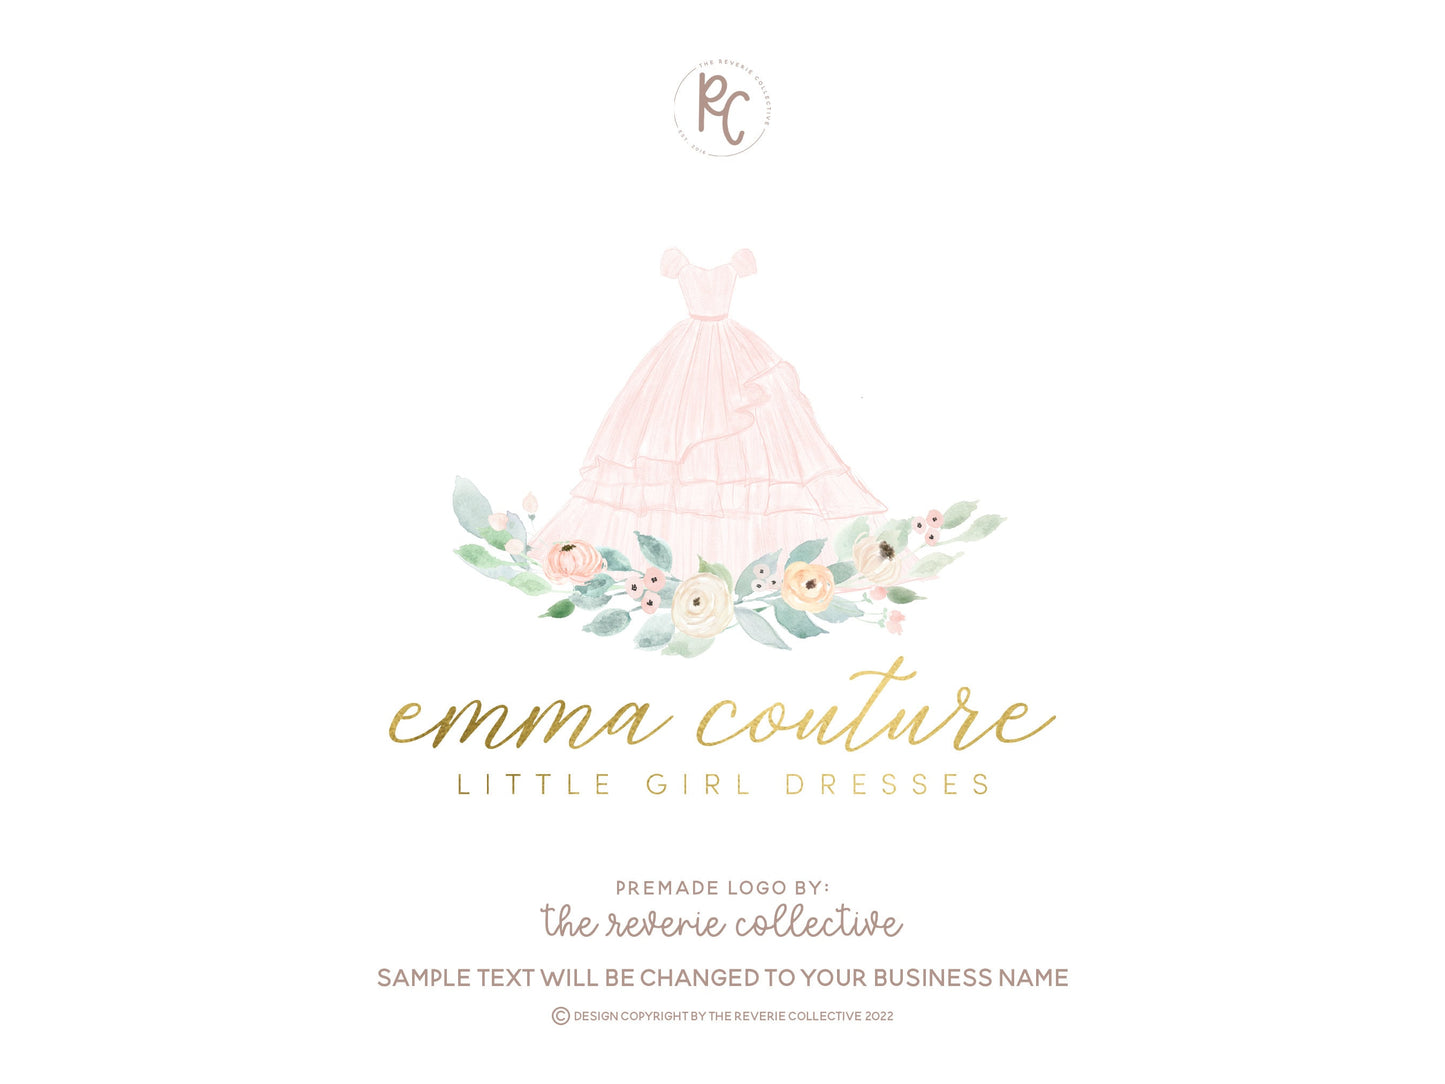 Emma Couture | Premade Logo Design | Dress, Fashion, Feminine